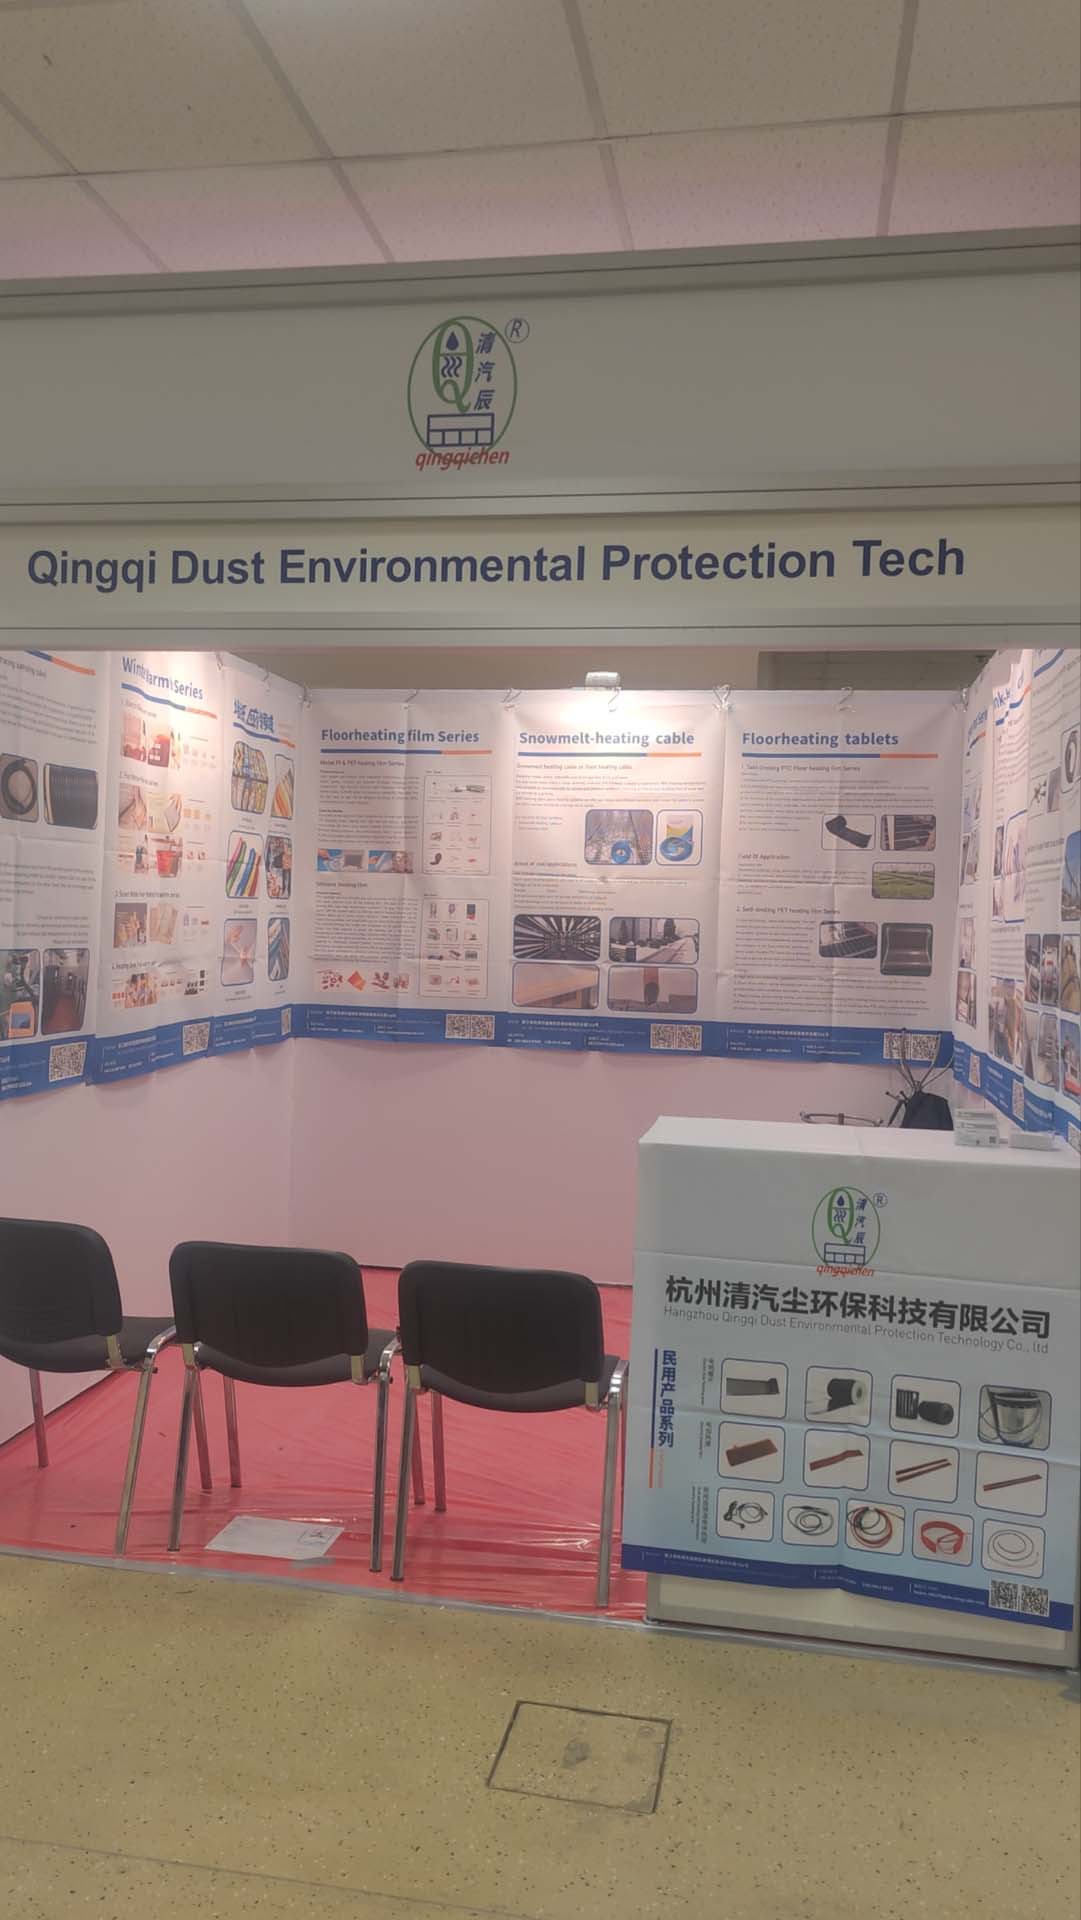  Hangzhou Qingqi Dust Environmental Protection Technology Co., Ltd. ing 19-21 Maret pameran CabeX ing Moskow, Rusia, welcome kanca Rusia ing pameran kanggo ijol-ijolan lan rembugan panuntun dhumateng 